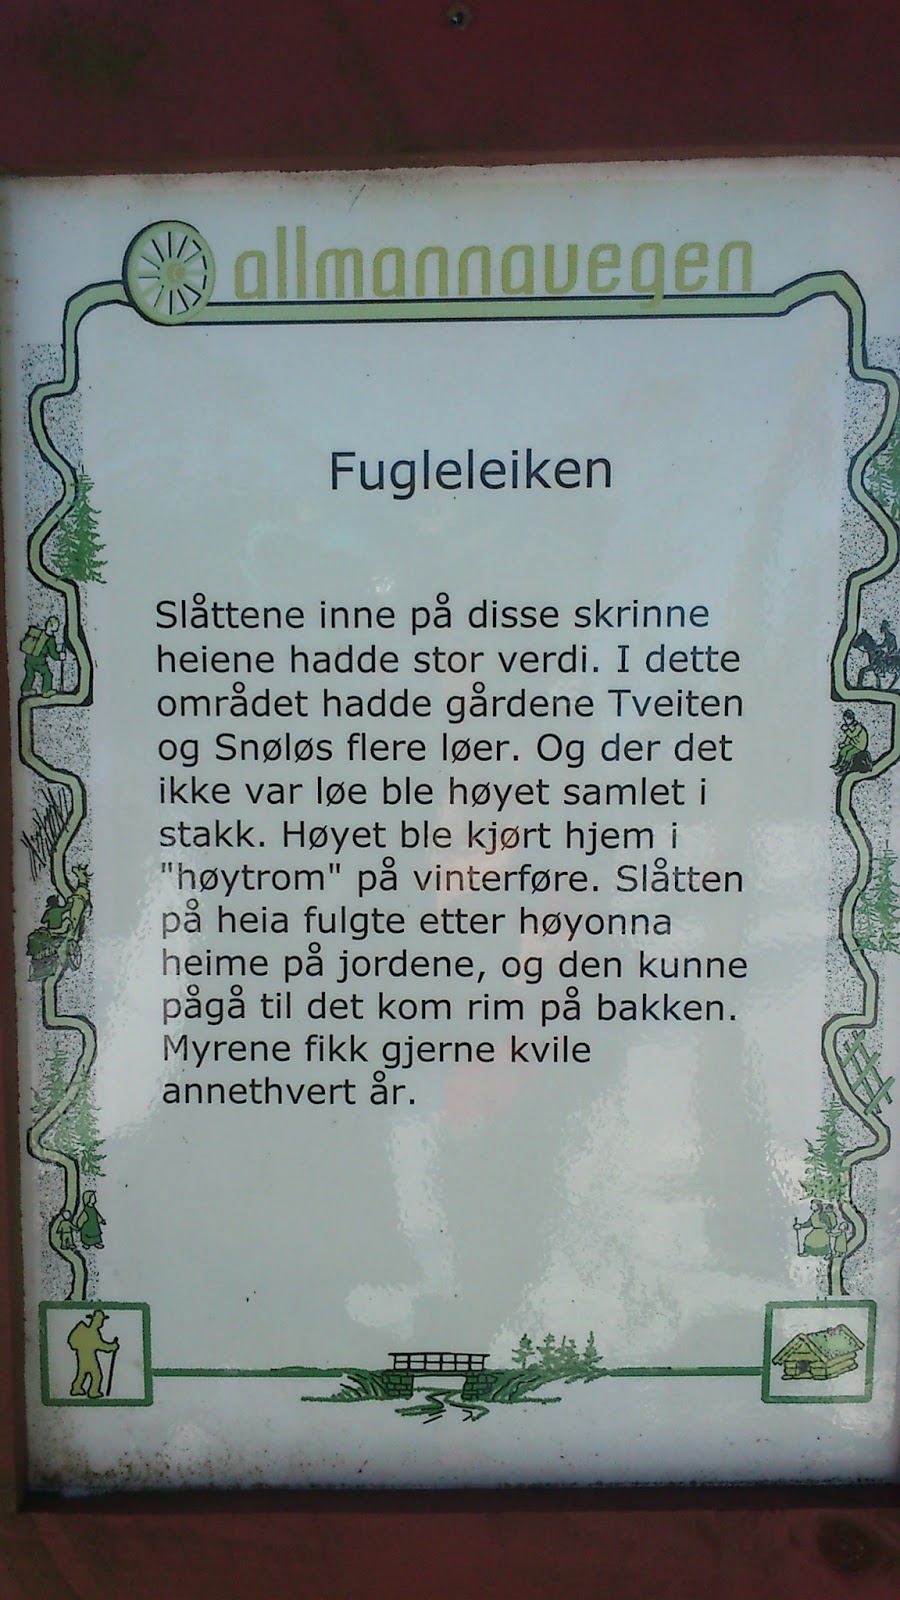 Info sign at Fugleleiken, Allmannavegen